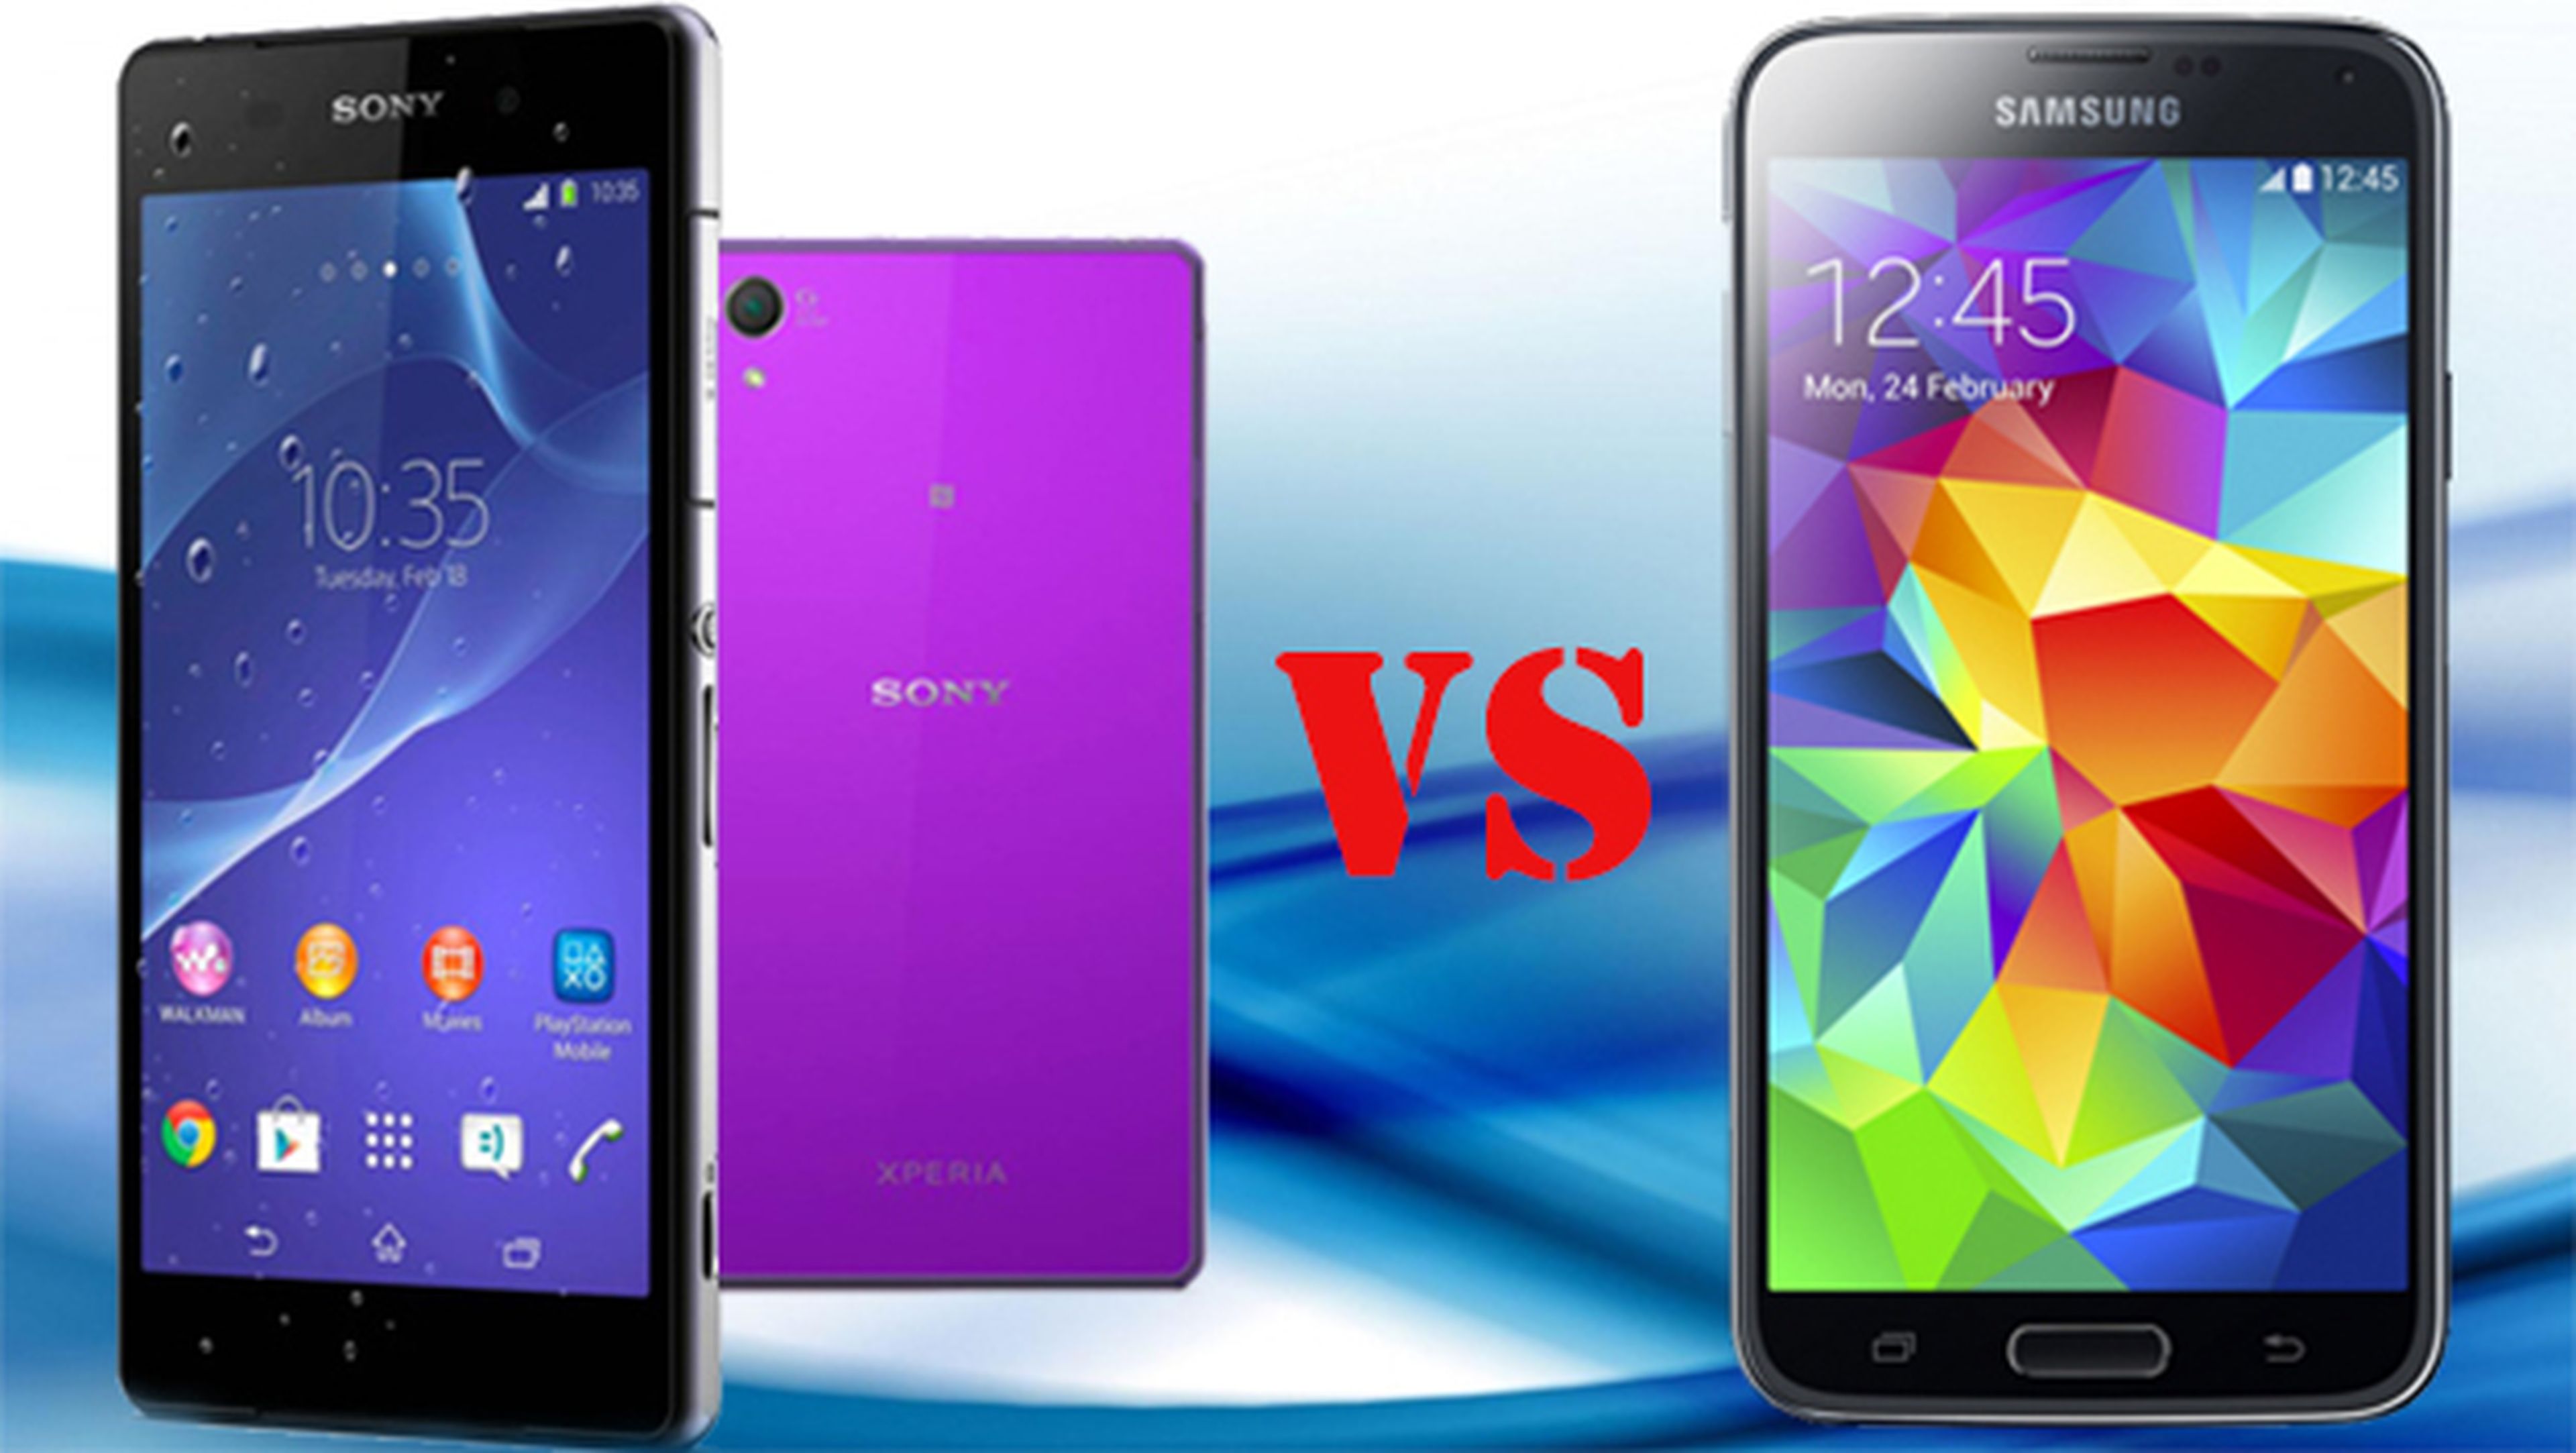 Samsung Galaxy S5 contra Xperia Z2. ¿Qué móvill es mejor?